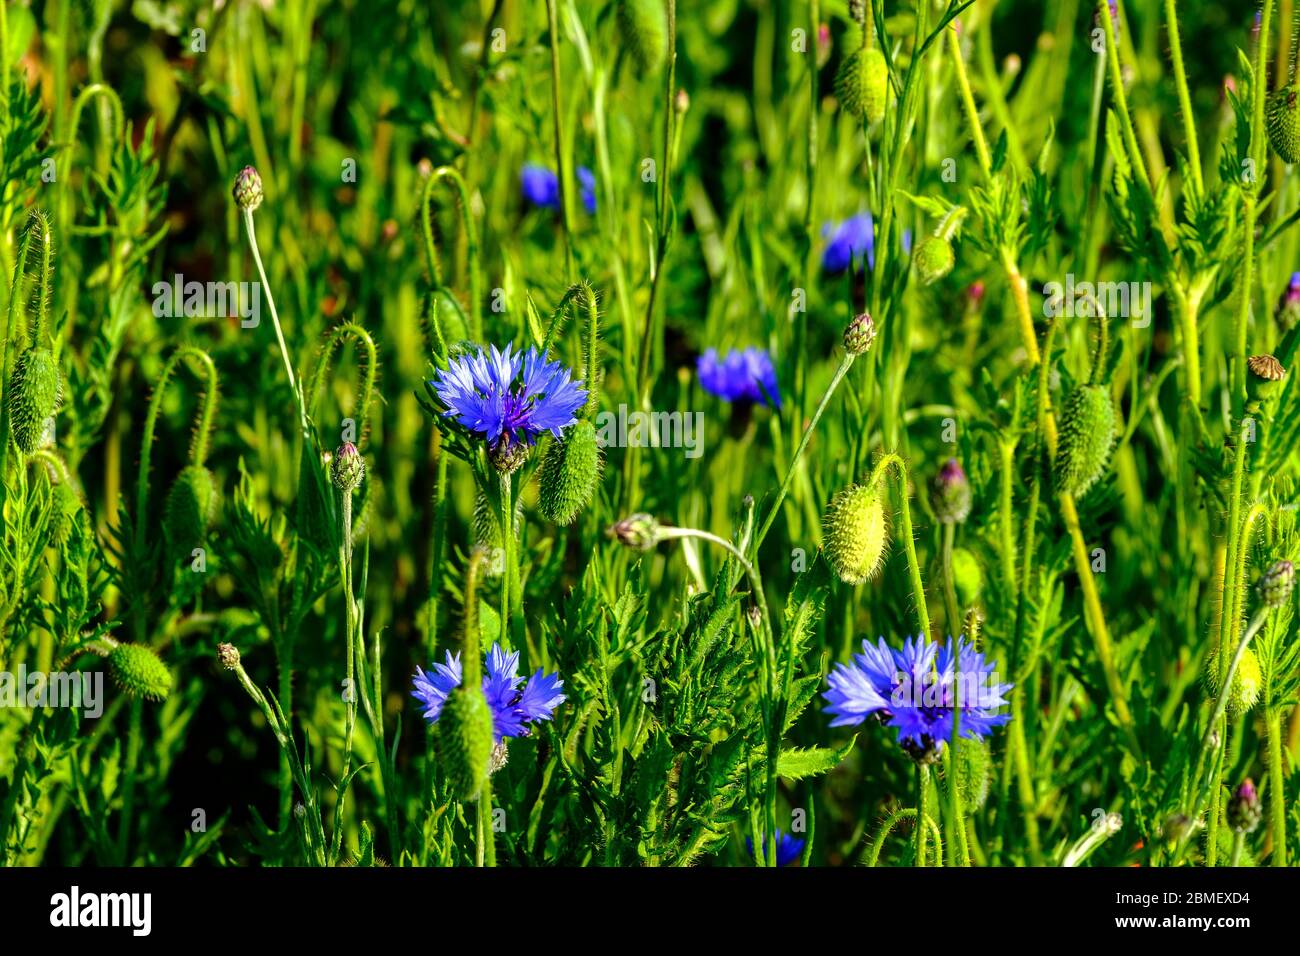 gros plan des fleurs de maïs dans l'herbe: Centaurea cyanus / Bleuet de France Banque D'Images